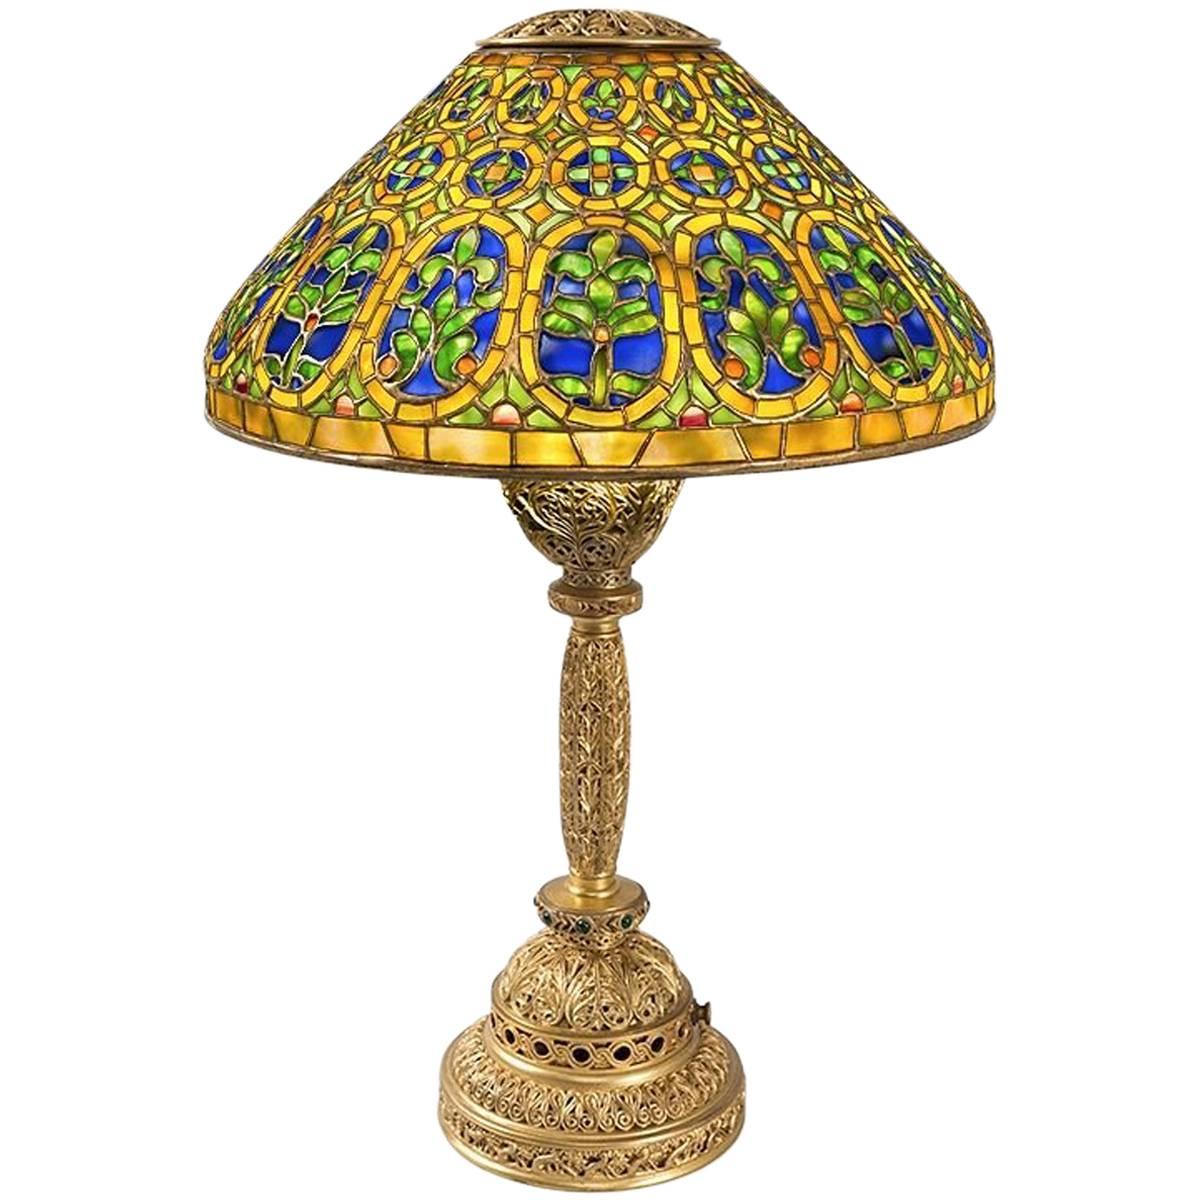 Tiffany Studios "Venetian" Table Lamp